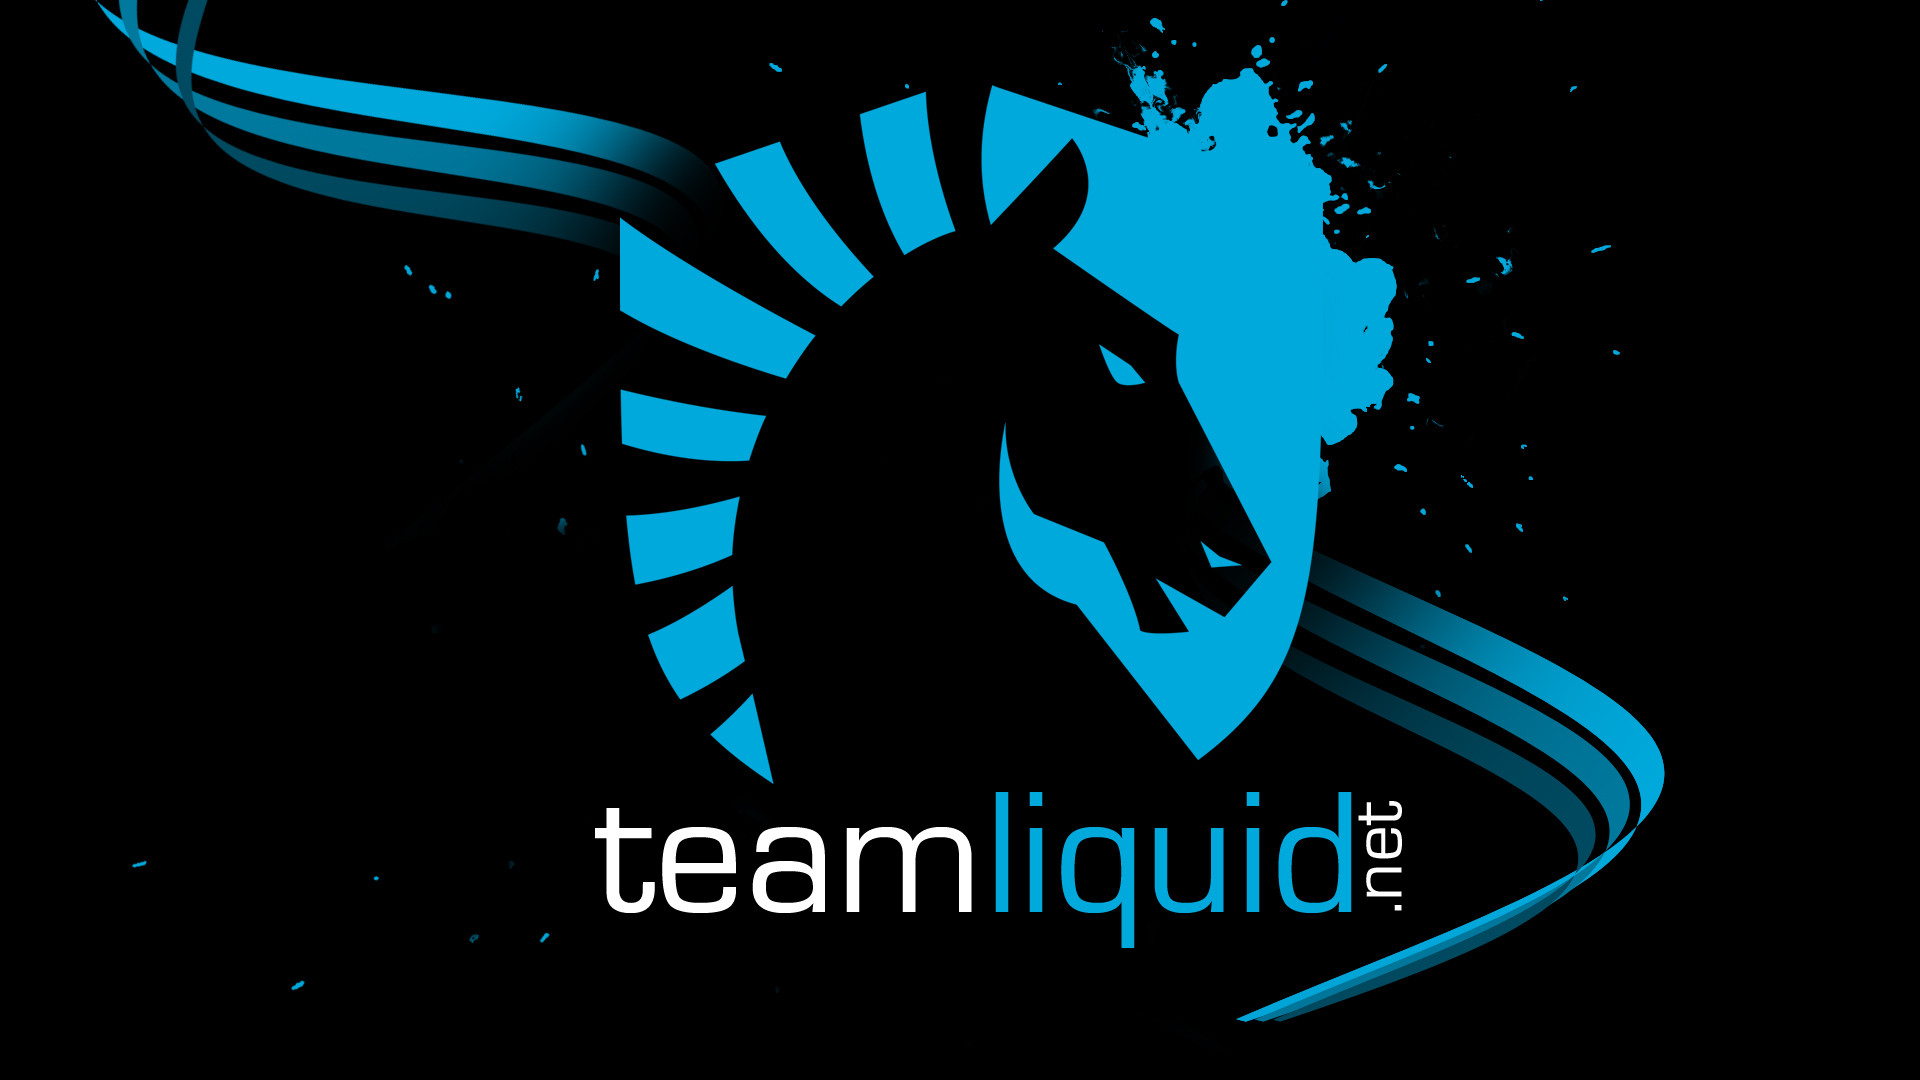 team liquid wallpaper,logo,font,graphic design,graphics,mane